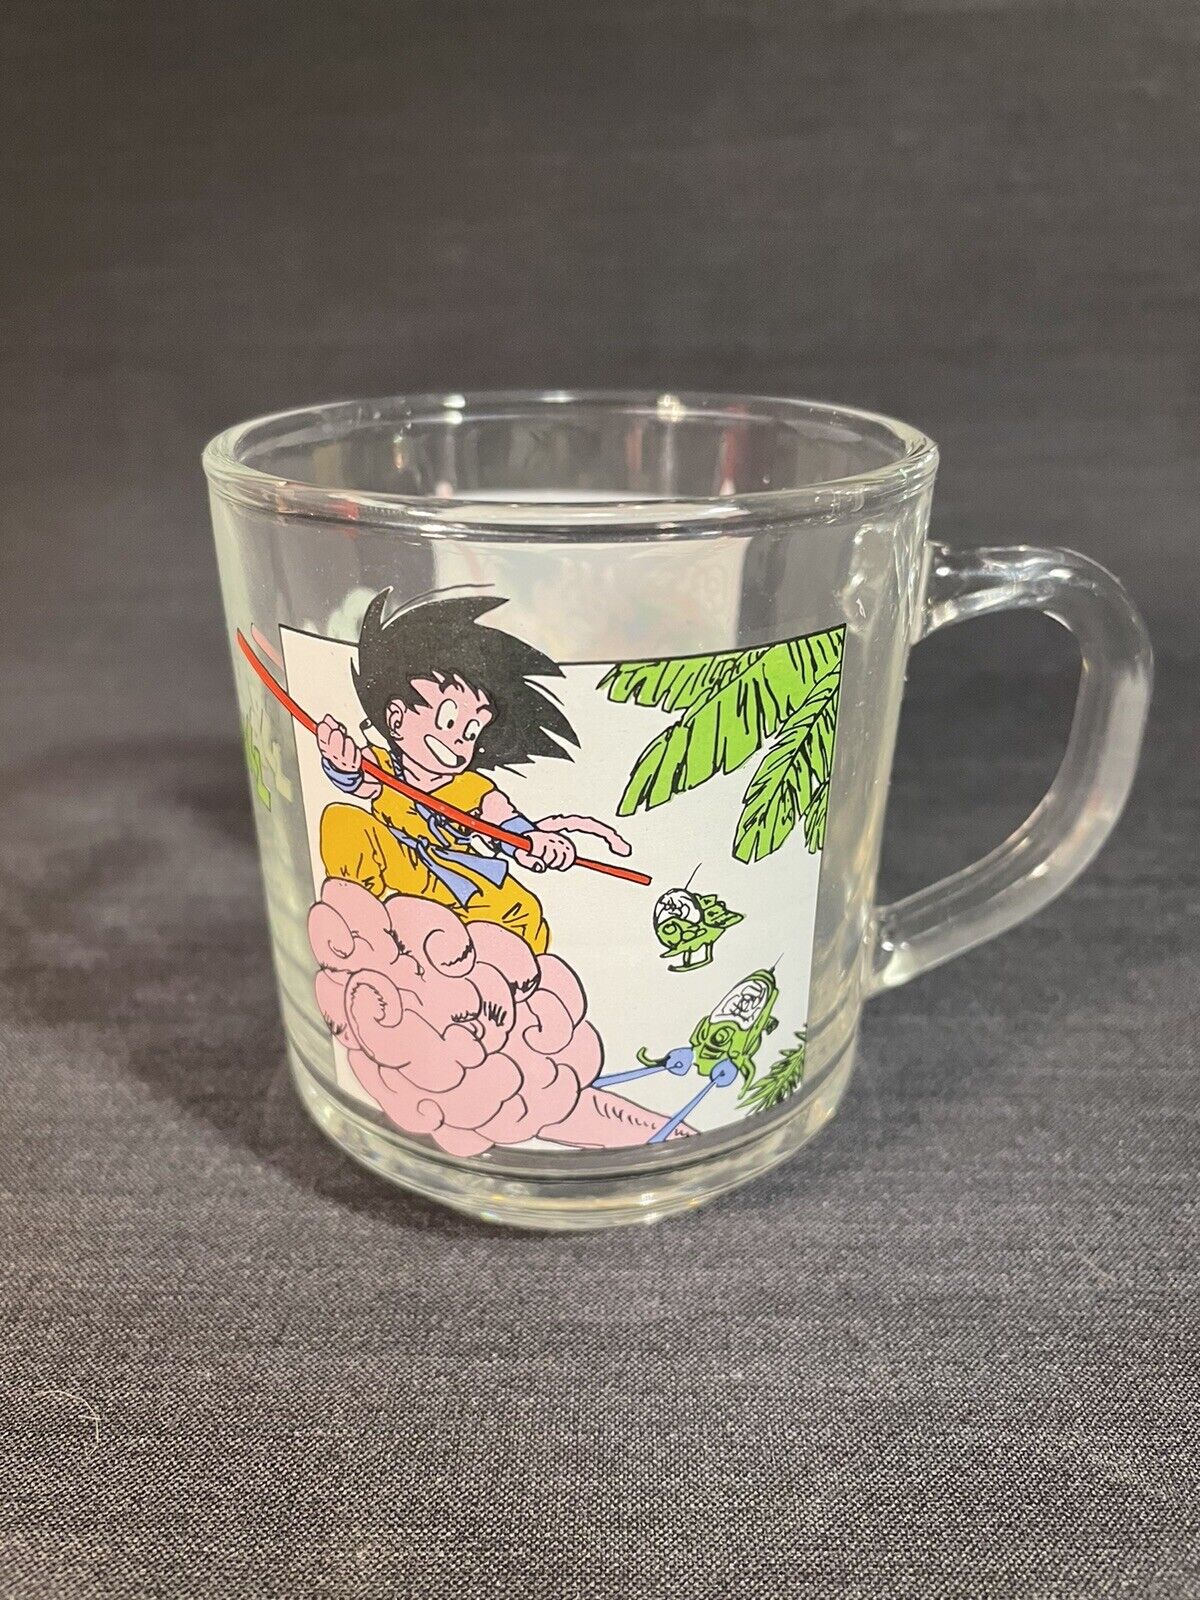 Vintage 1986 Dragon Ball Z Akira Bird Studio KIG Indonesia Glass Mug RARE Anime